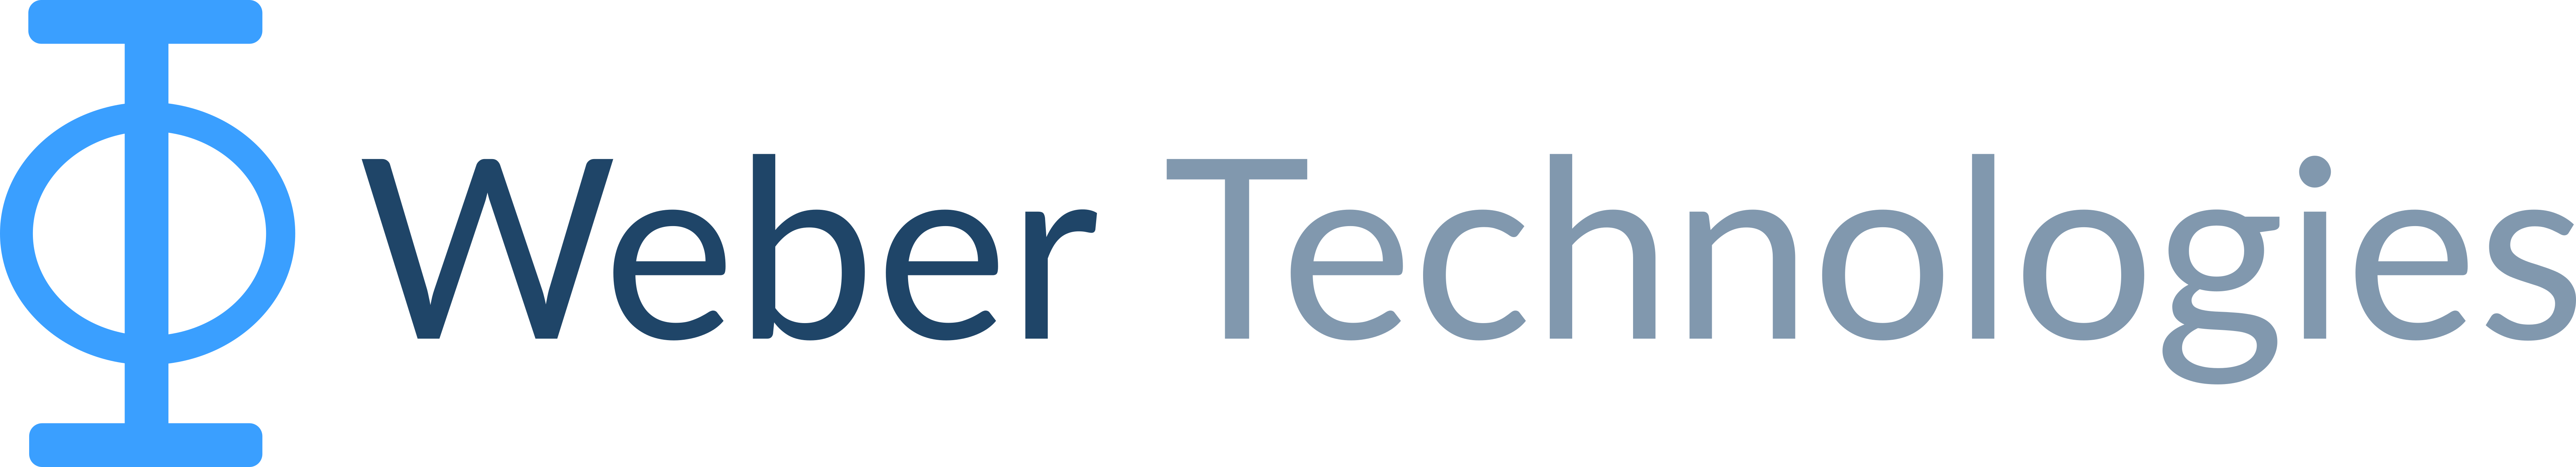 Weber Technologies